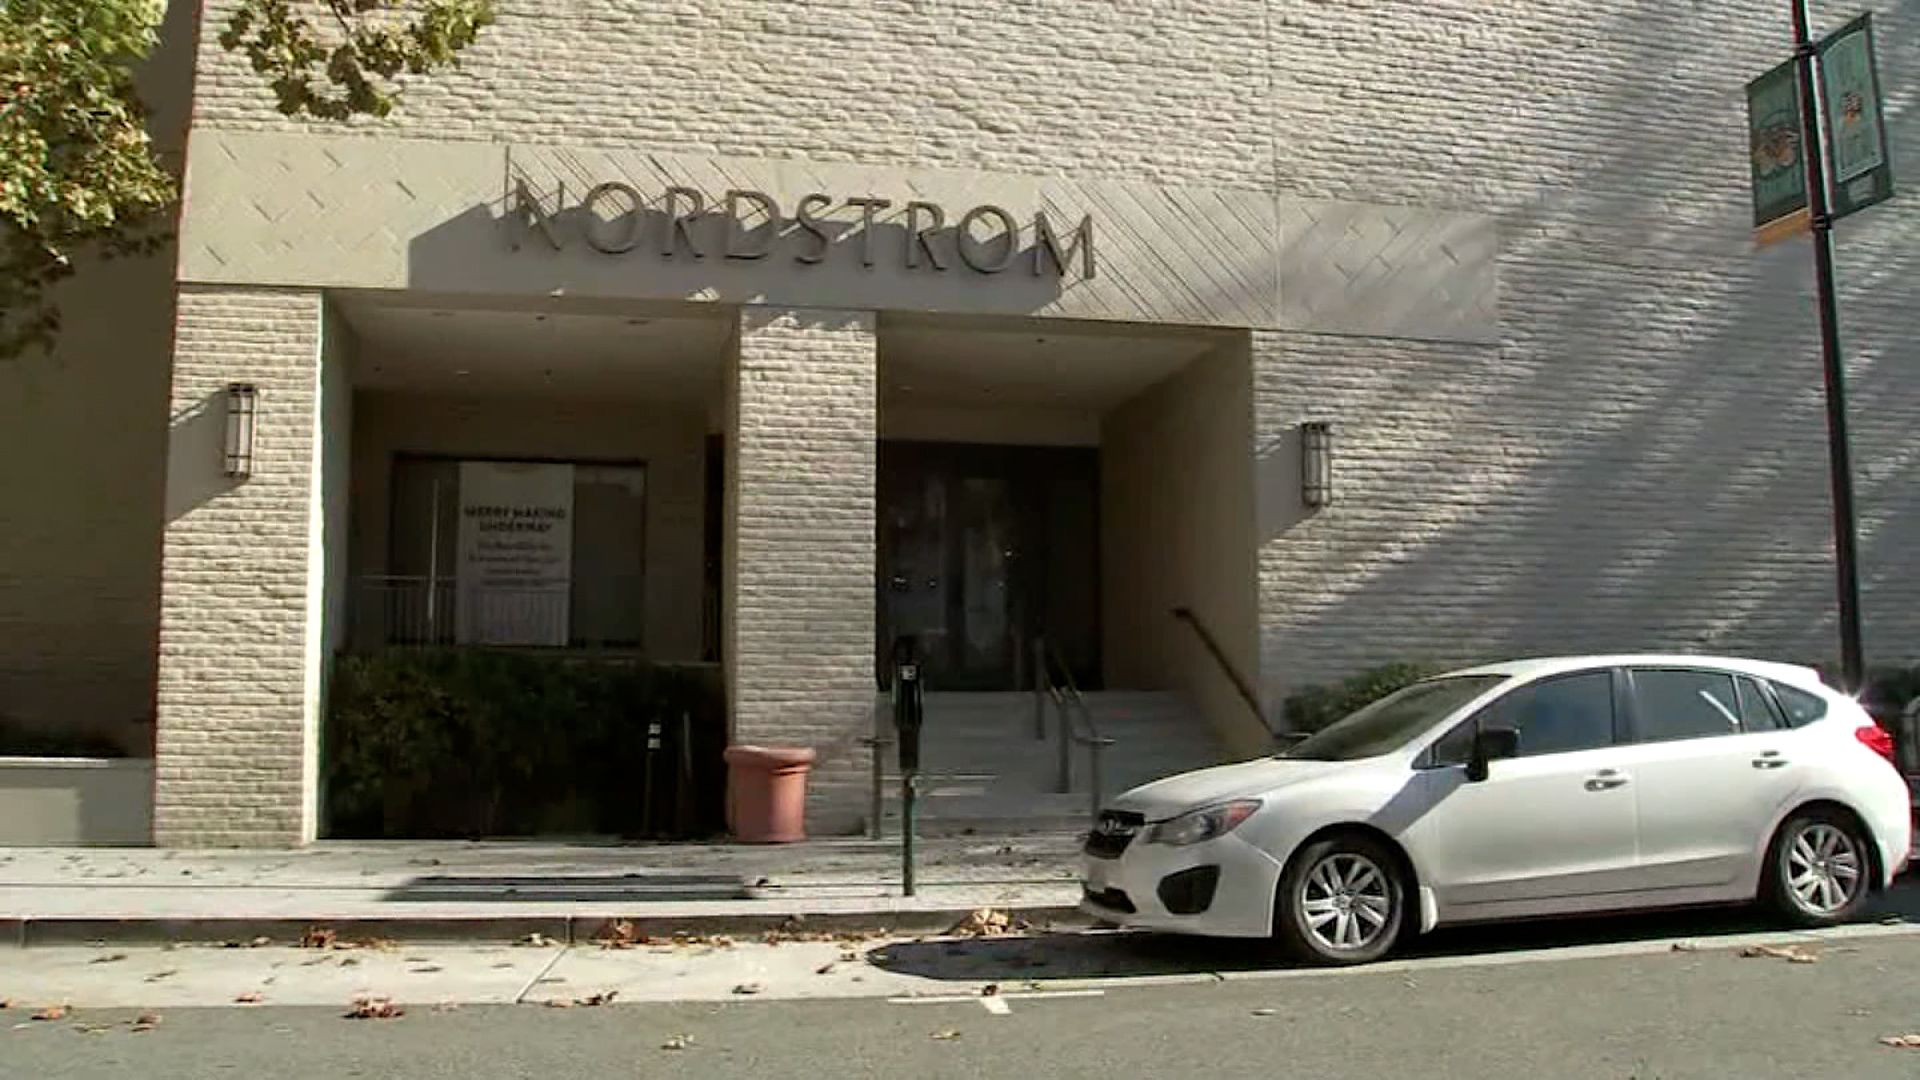 Nordstrom ransacked: 3 arrested after dozens ransack a Nordstrom